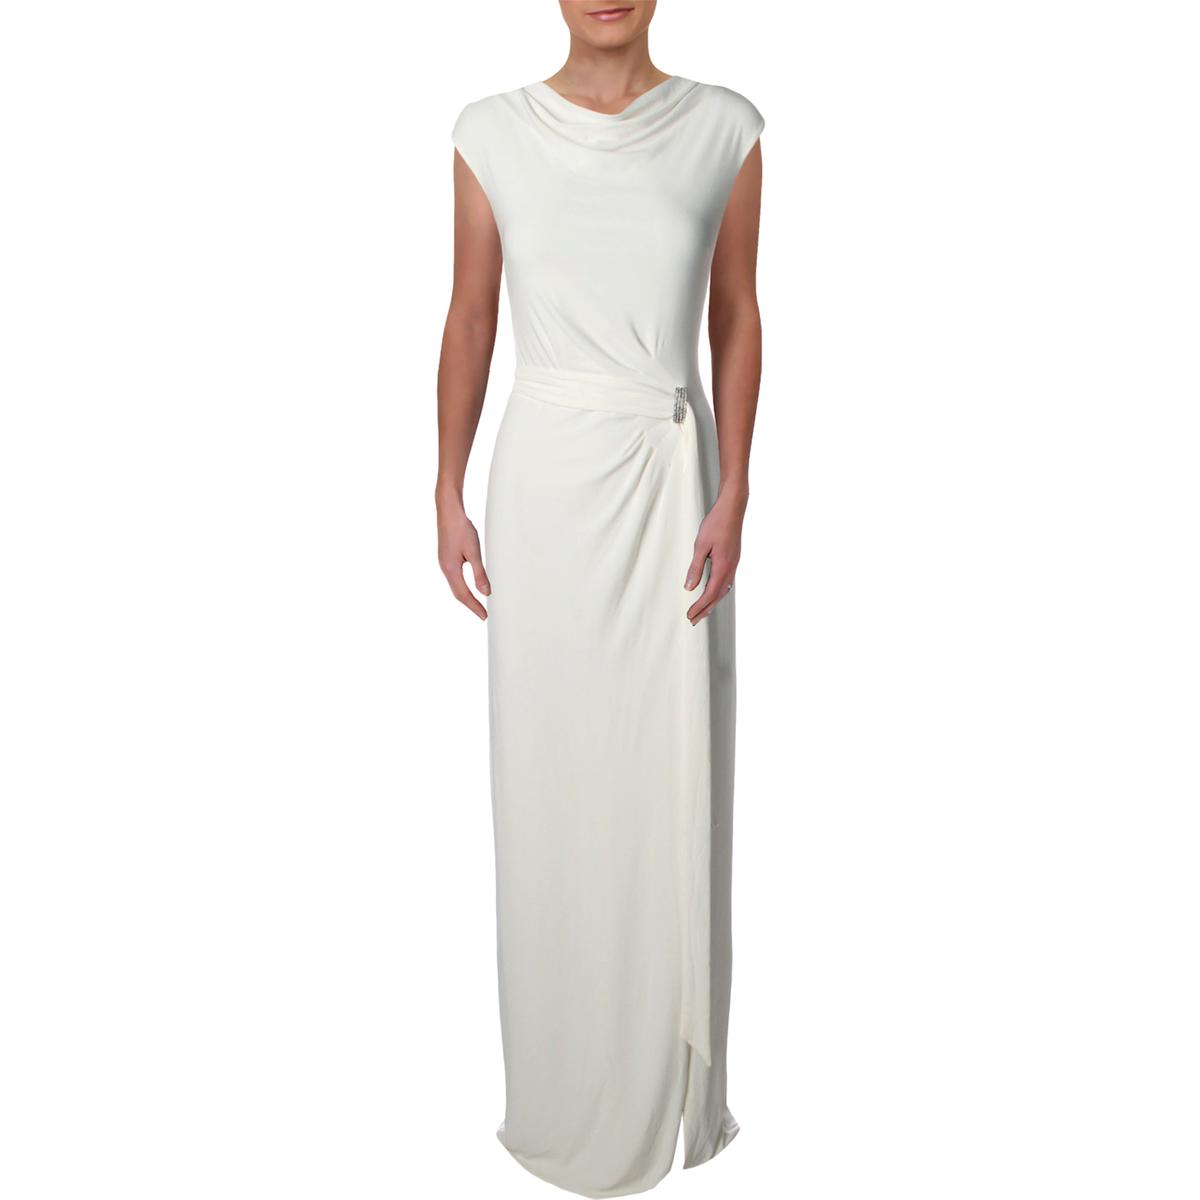 Lauren Ralph Lauren Womens White Sleeveless Evening Dress Gown 10 BHFO ...